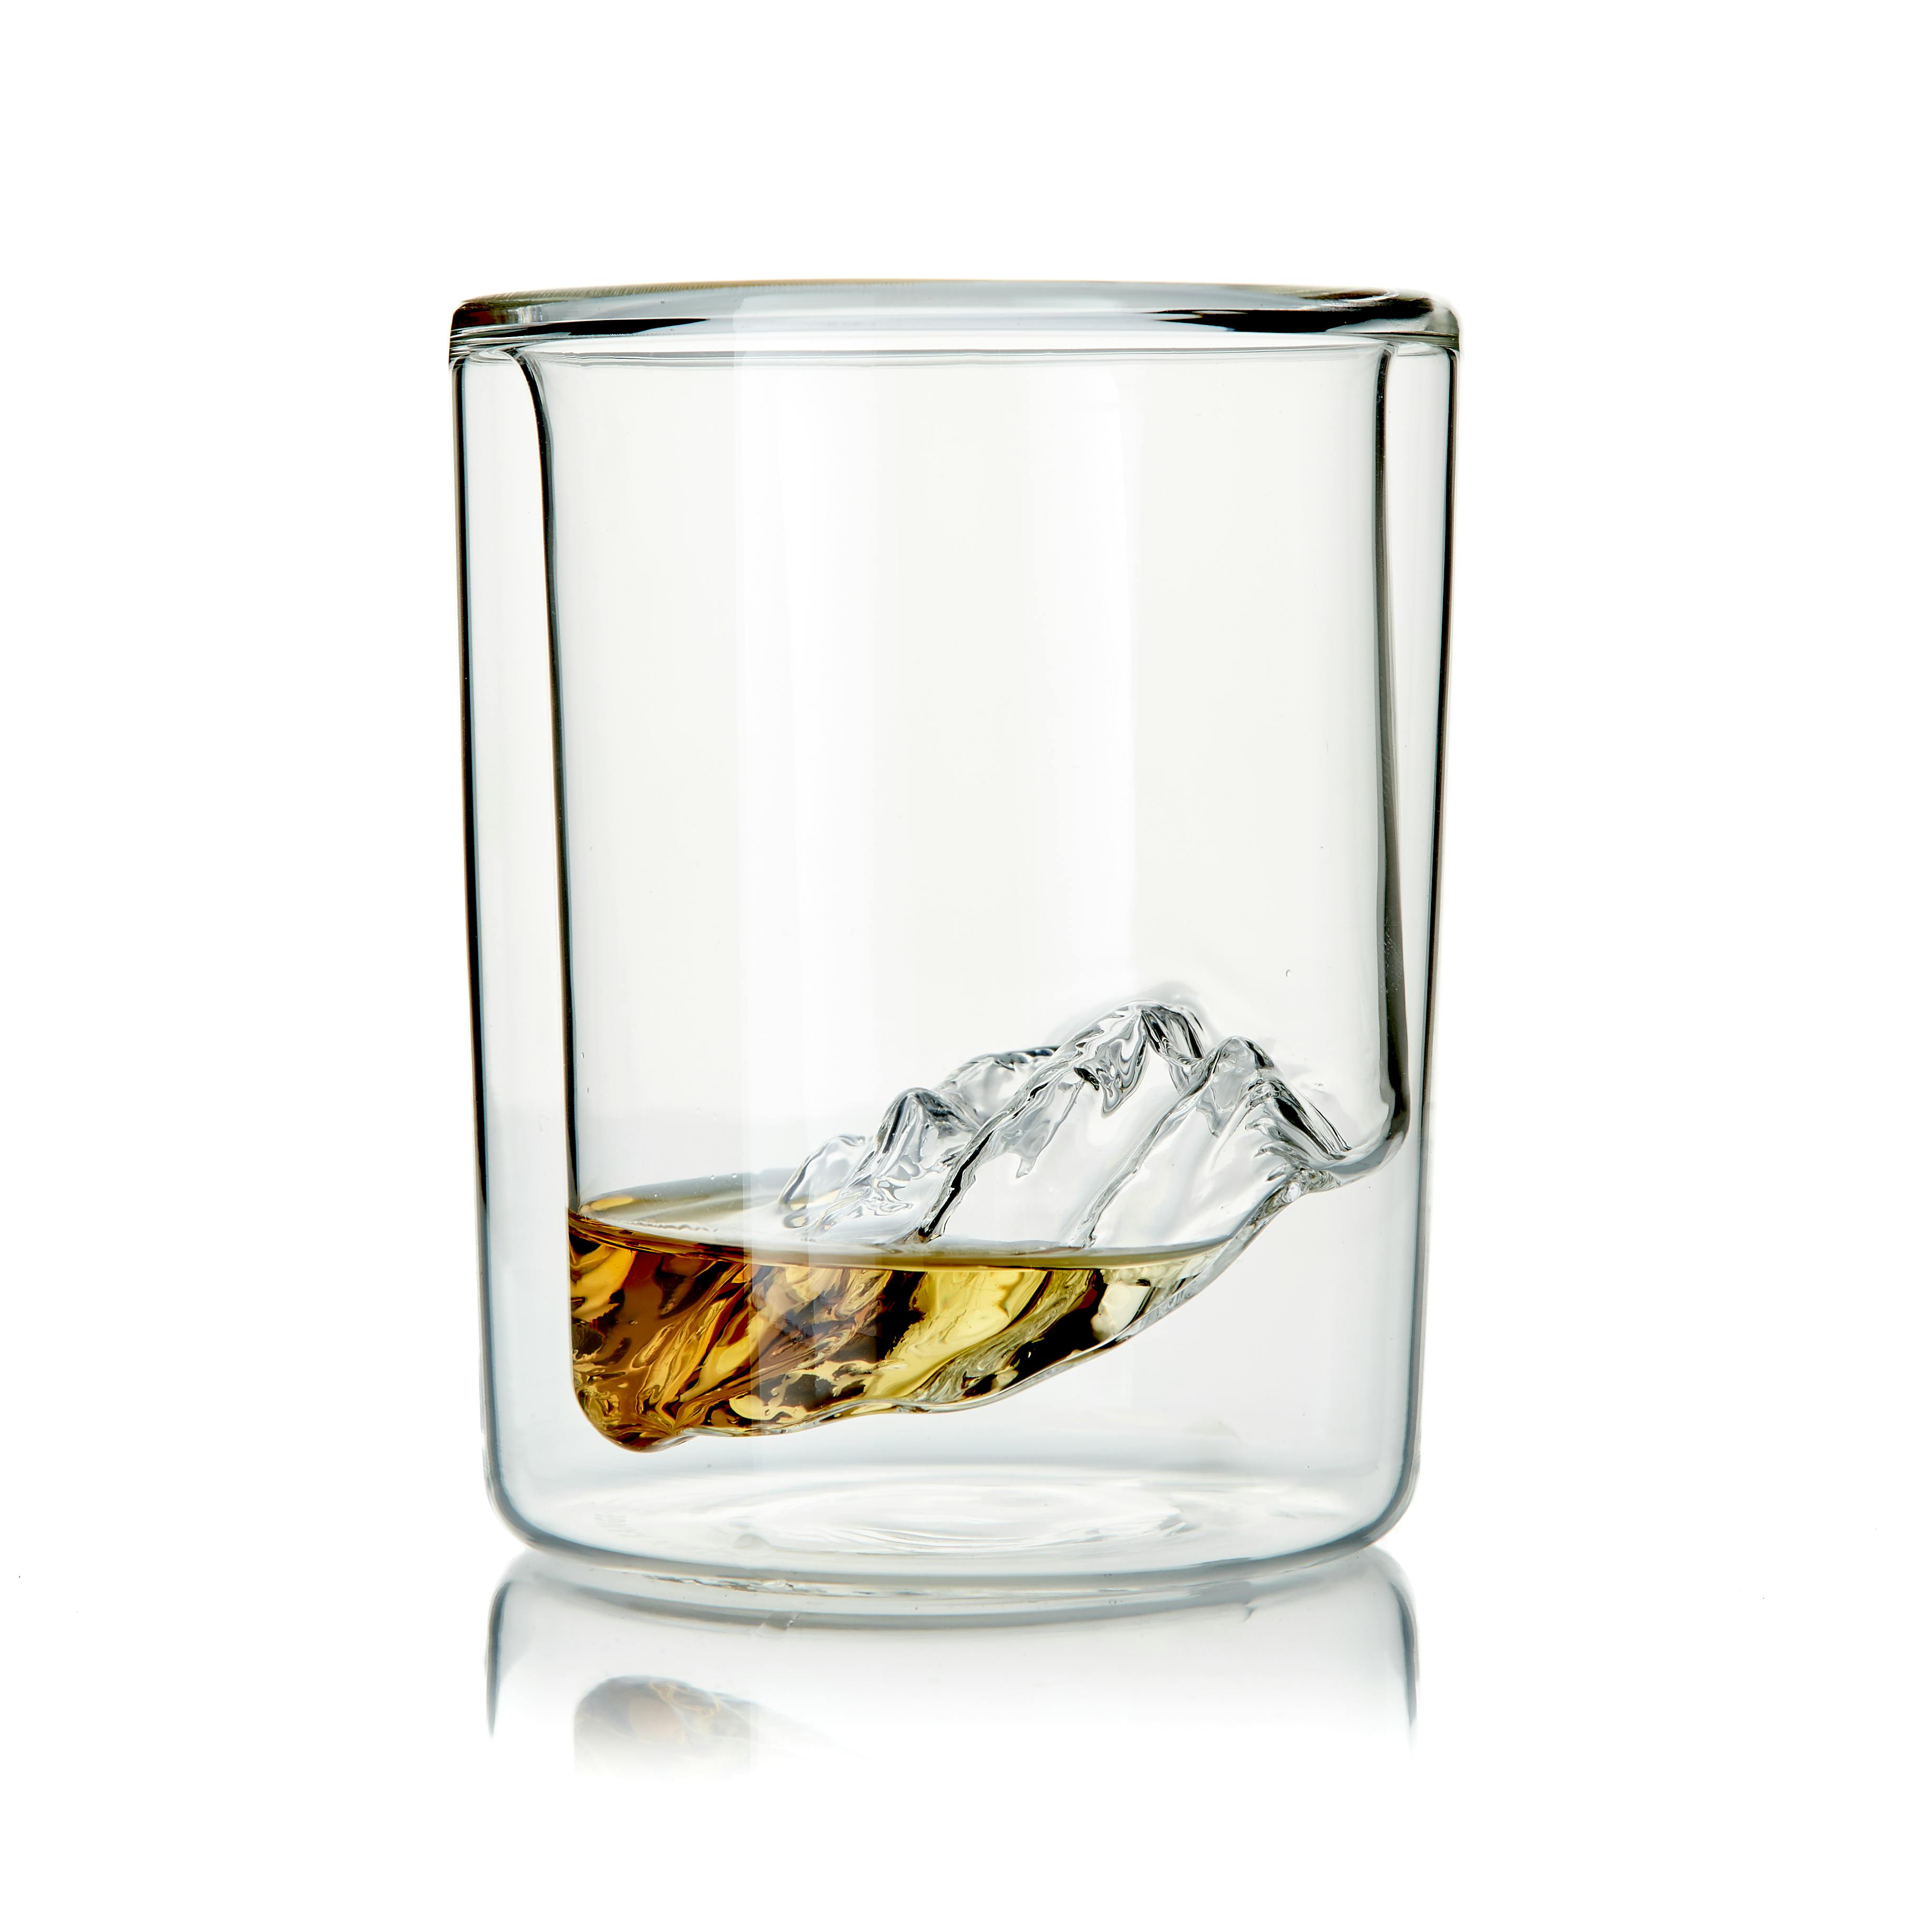 Grand Tetons - Set of 4 Whiskey Glasses